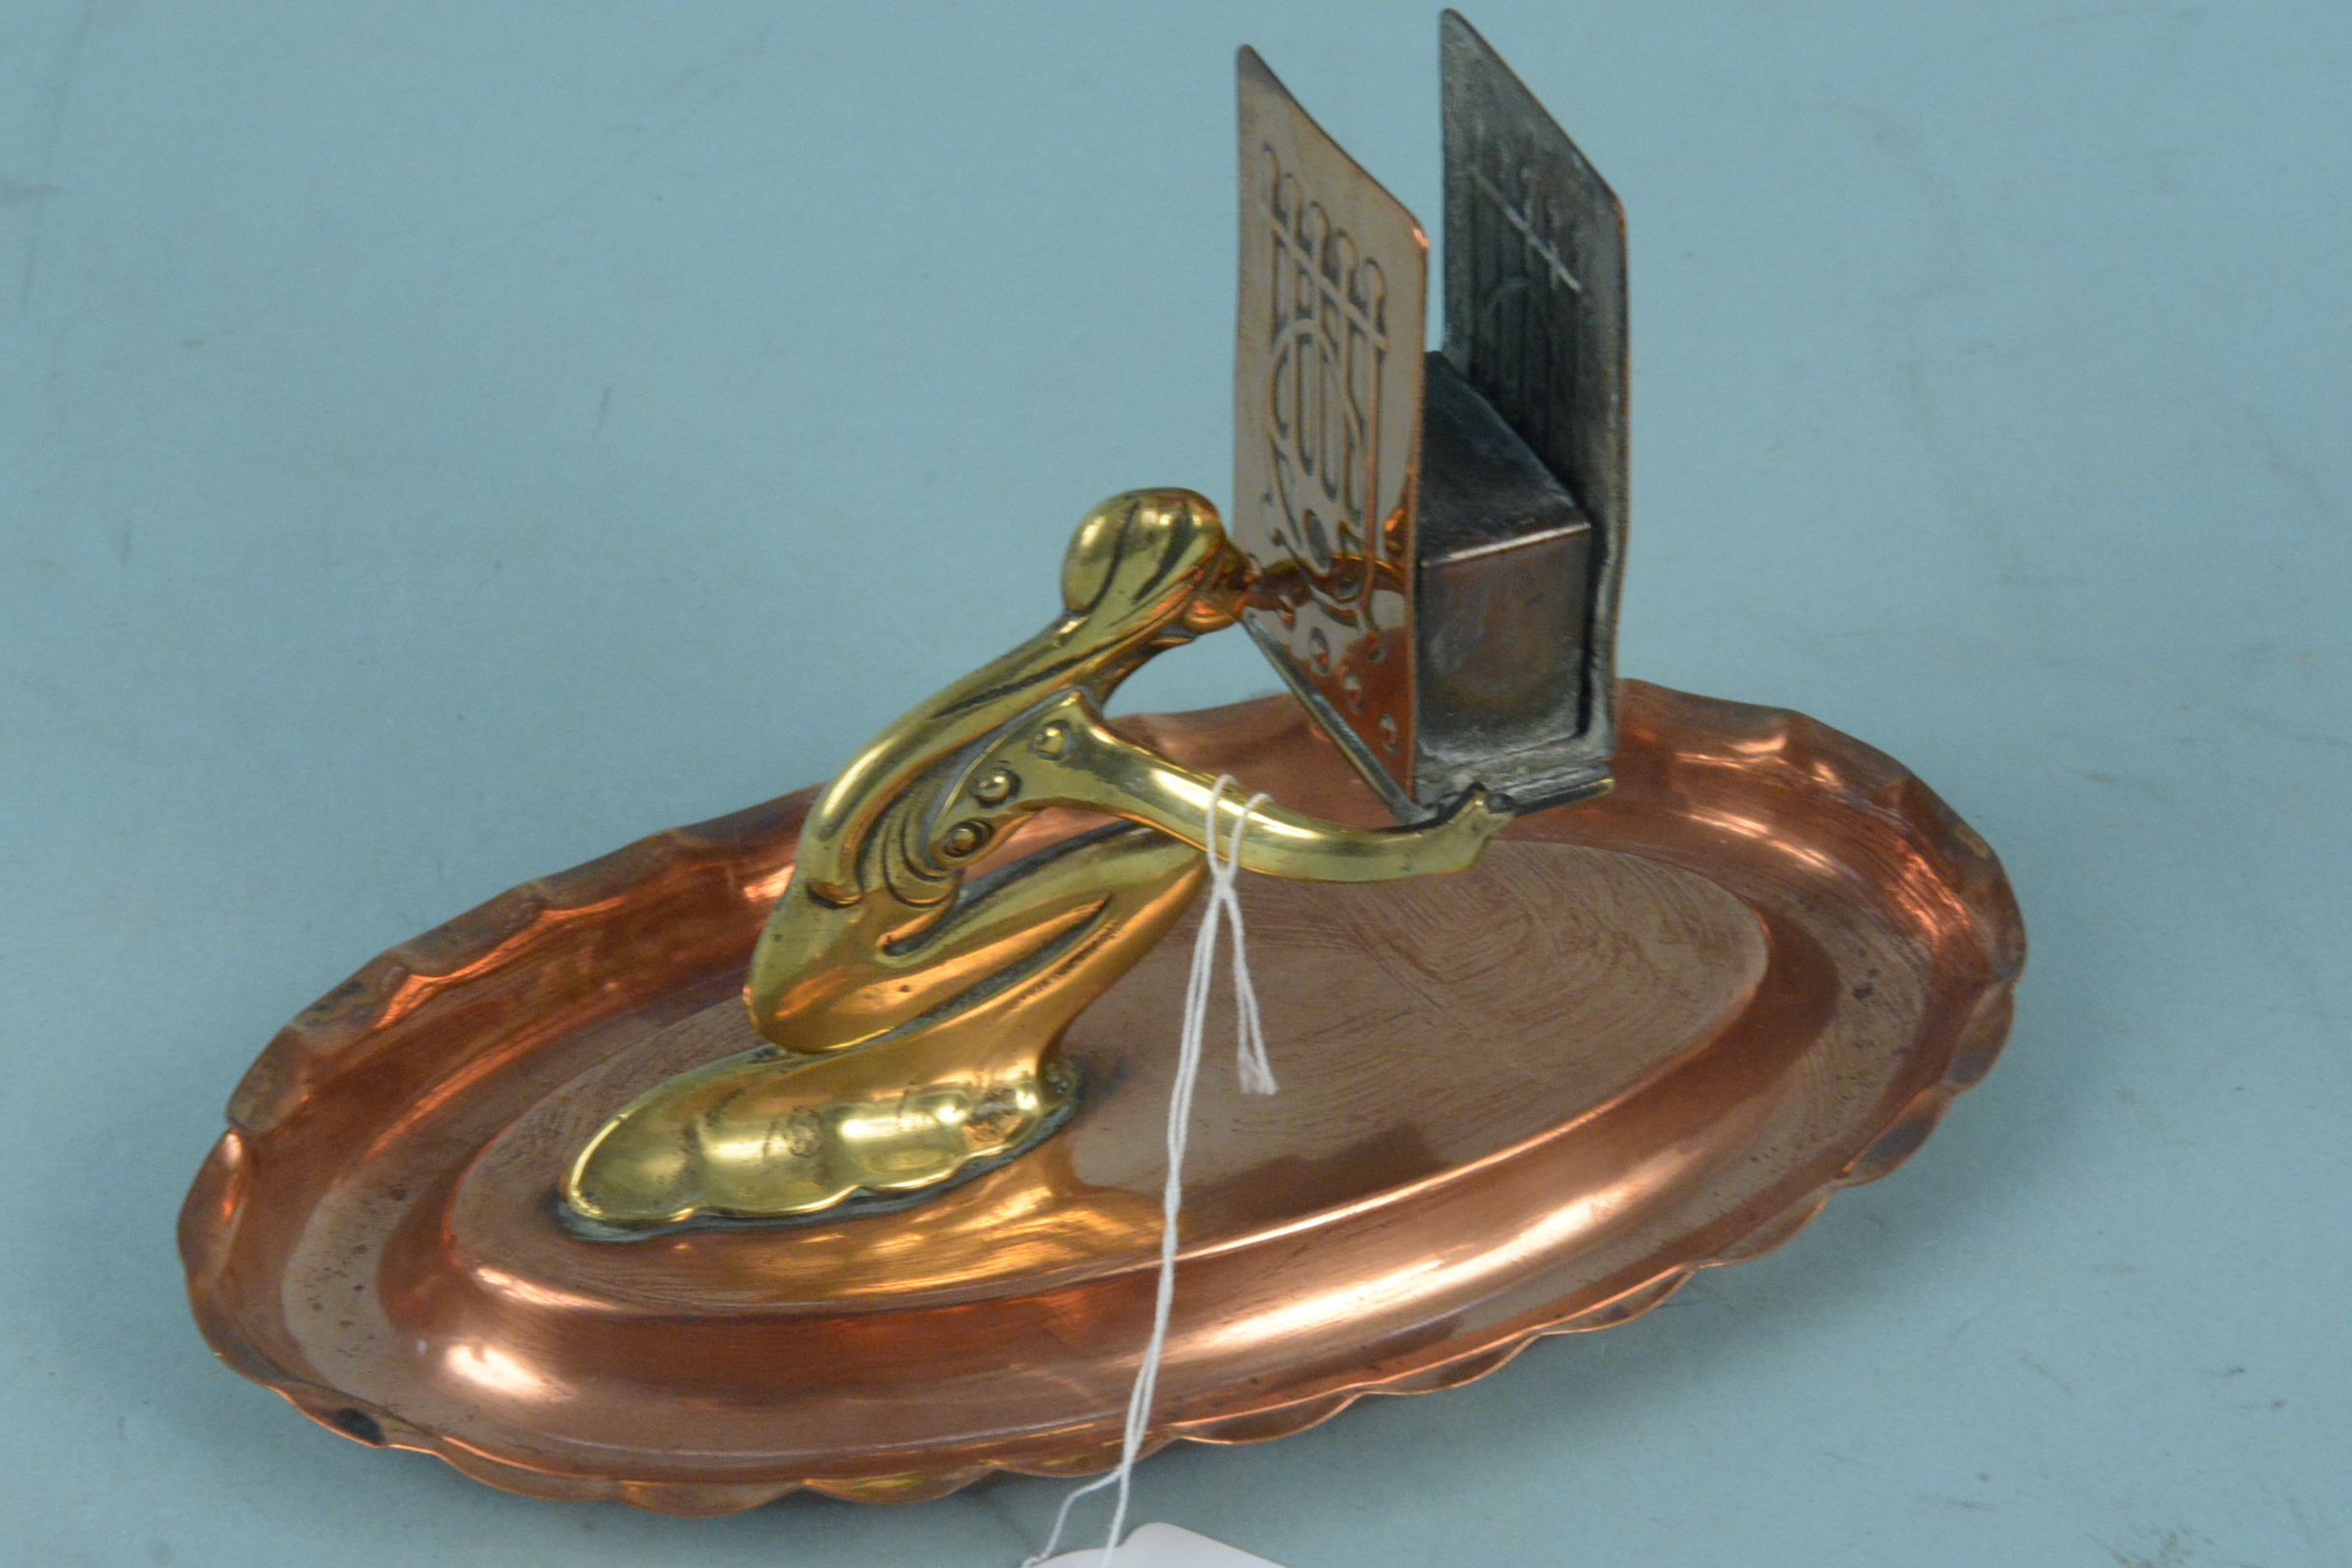 An Art Nouveau period copper and brass figural matchbox holder, 18.